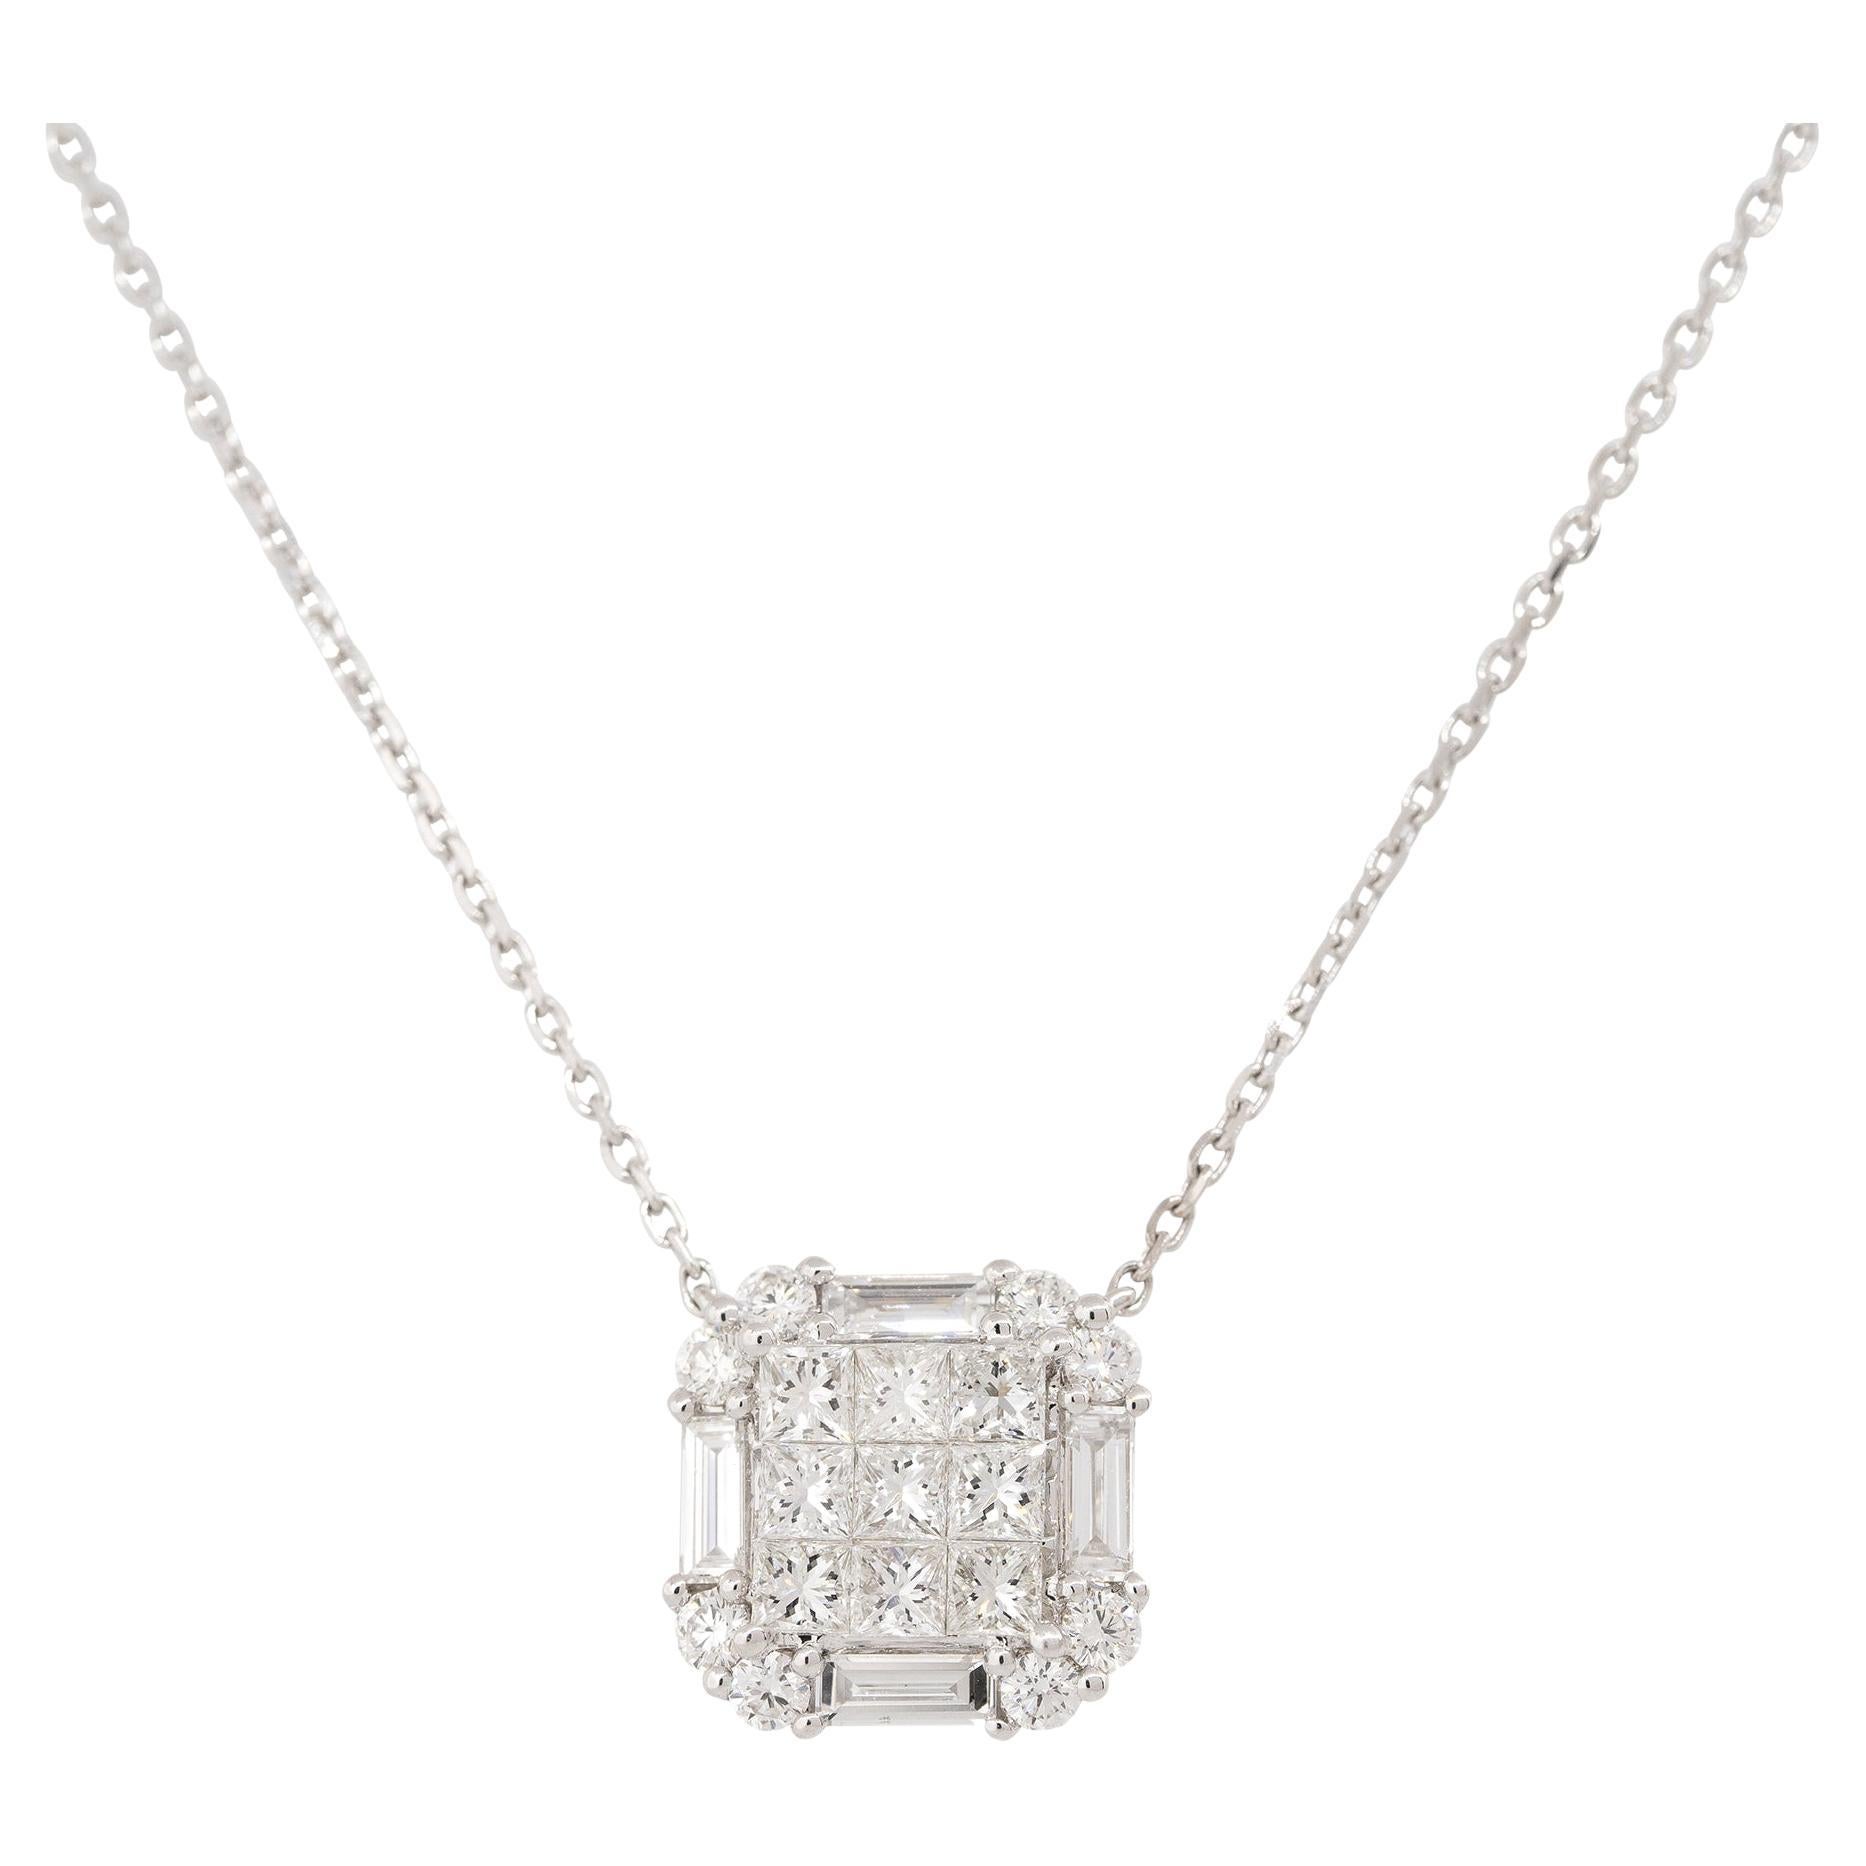 1.87 Carat Princess Cut Diamond Pendant Necklace 18 Karat In Stock For Sale